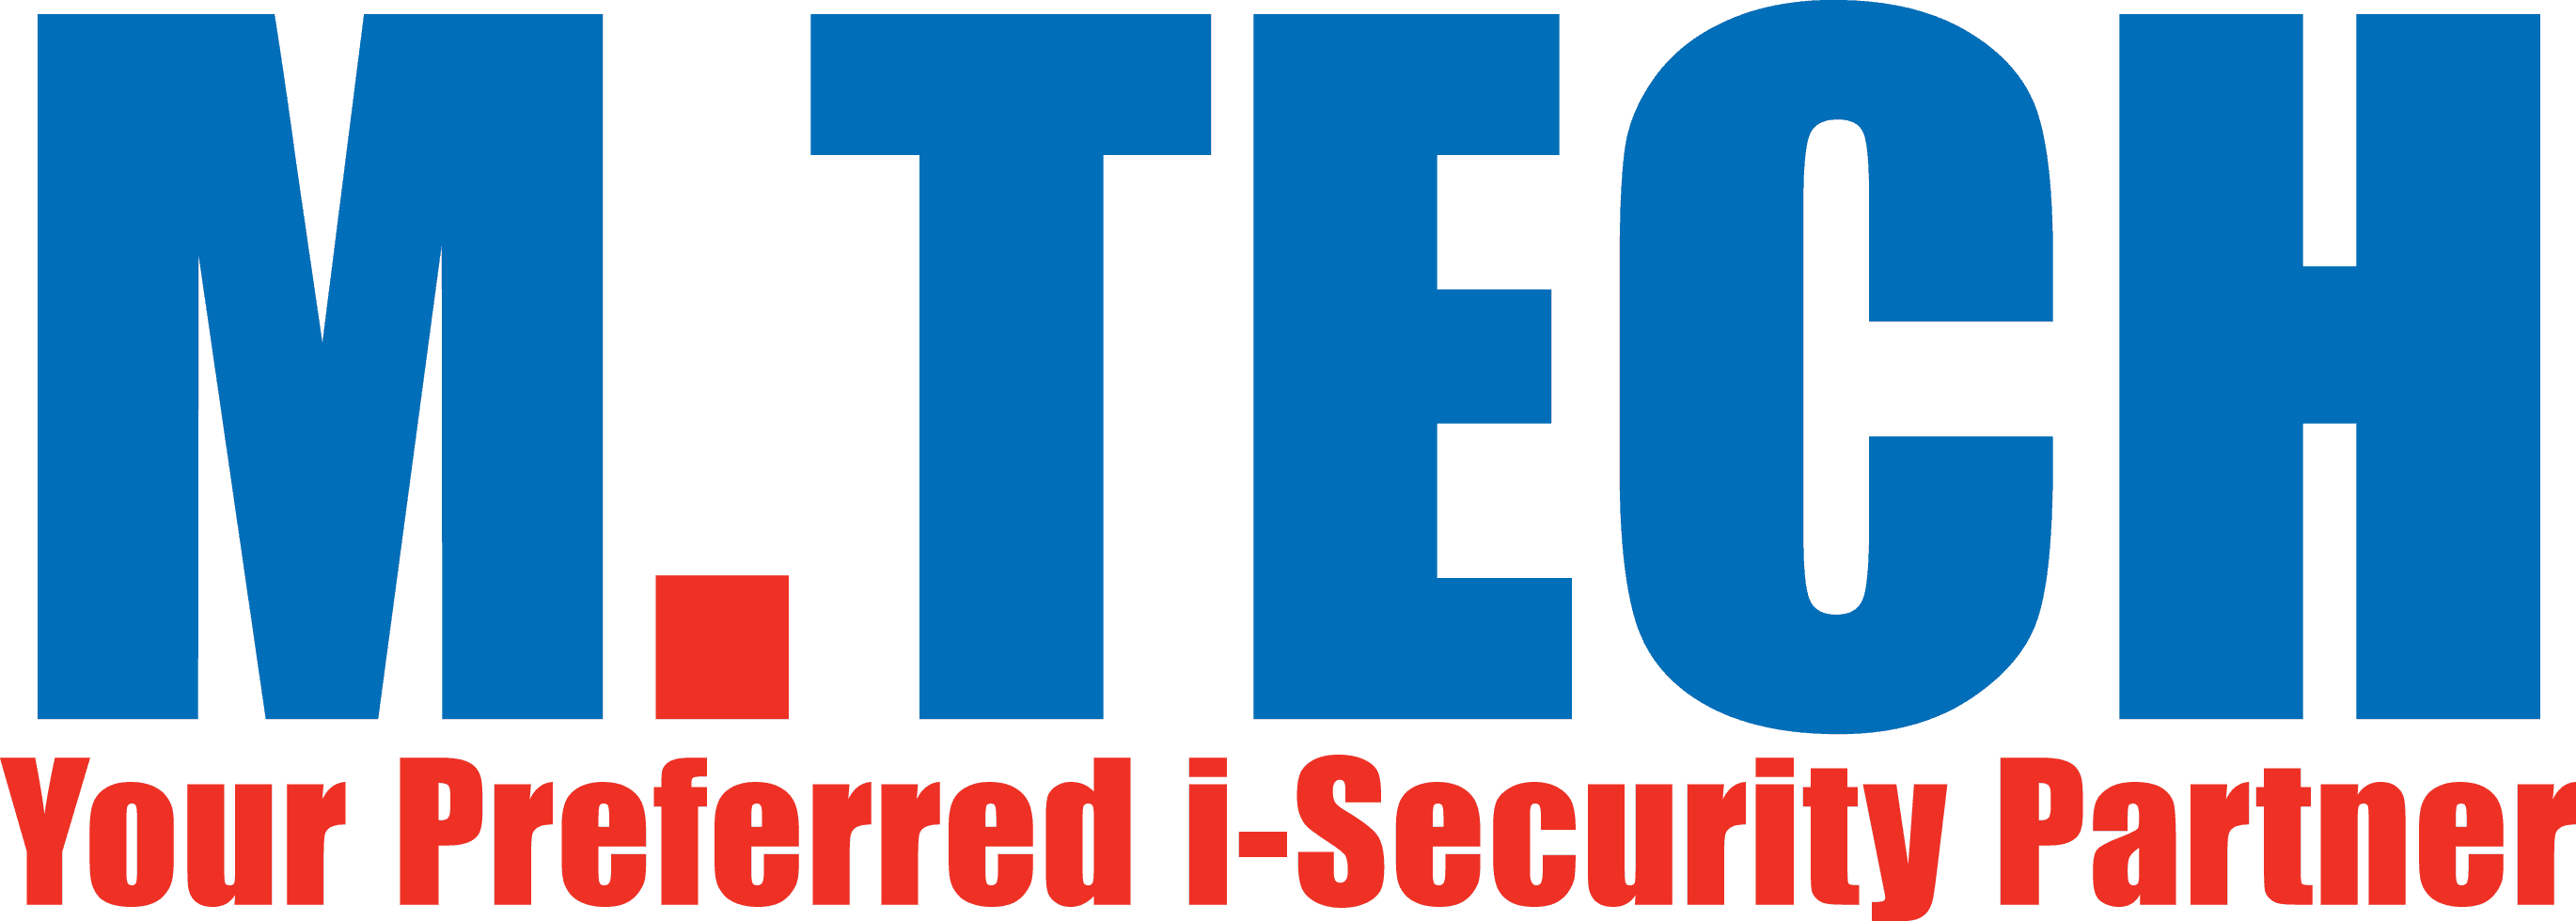 M.tech logo